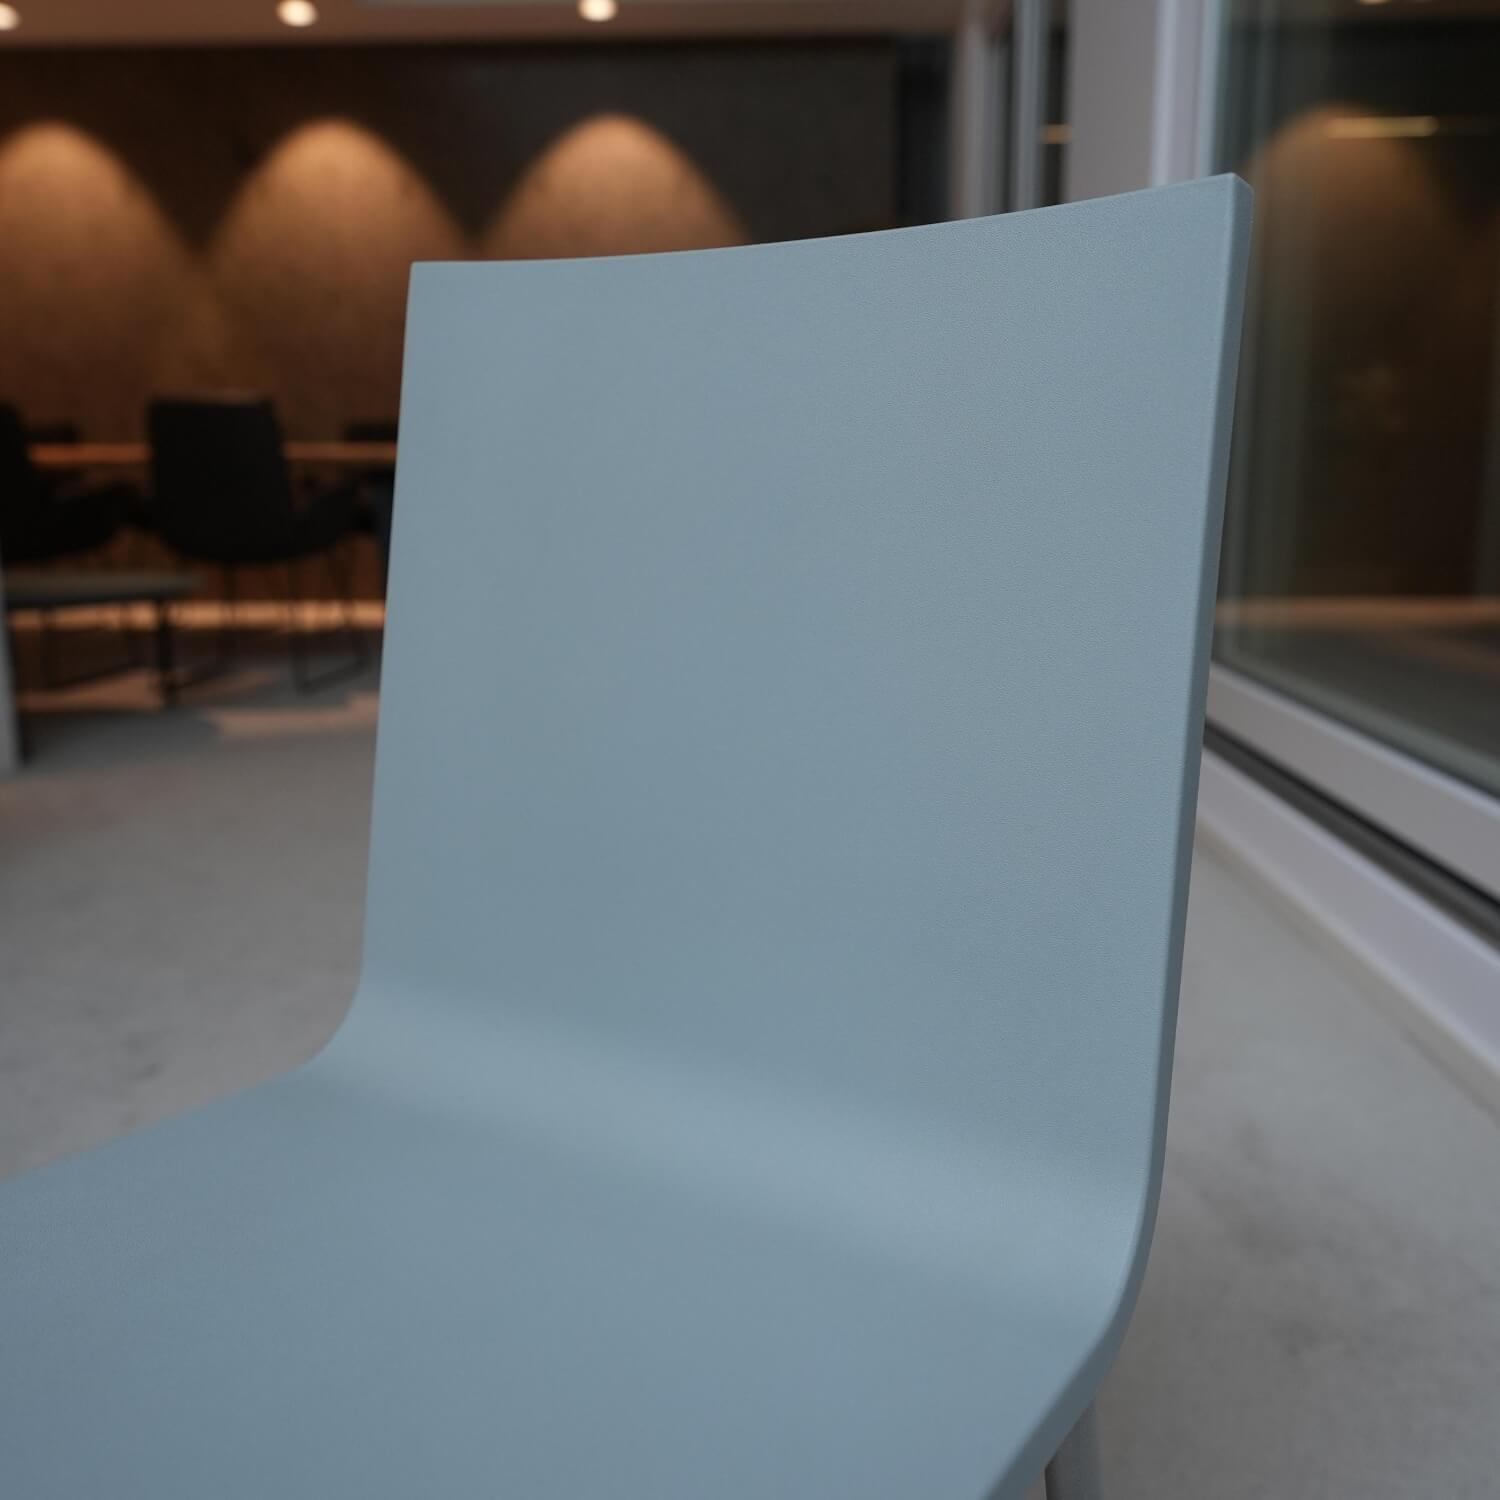 Stuhl 03 Sitzschalenfarbe Hellgrau Untergestell Pulverbeschichtet Silber Glatt